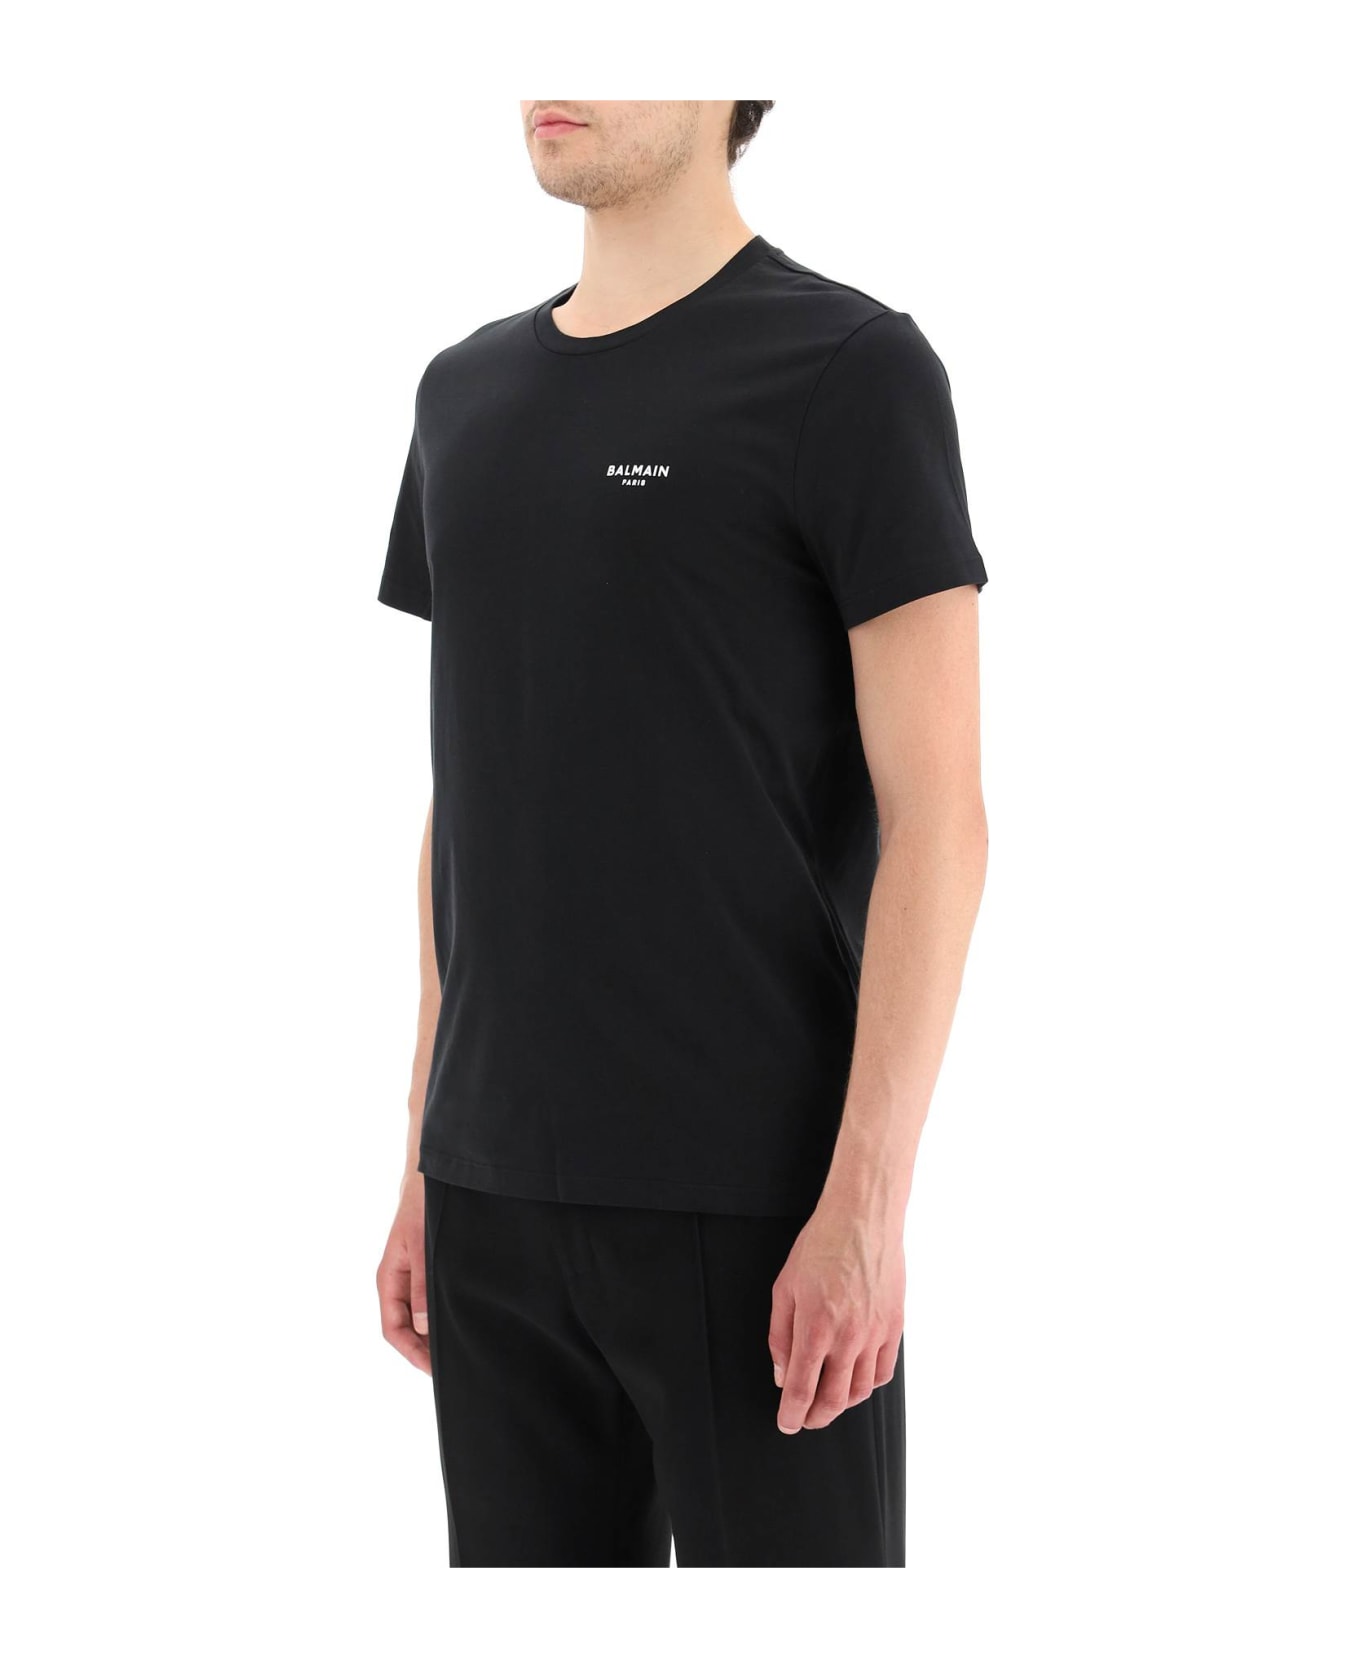 Balmain Black Cotton T-shirt - Eab Noir Blanc シャツ